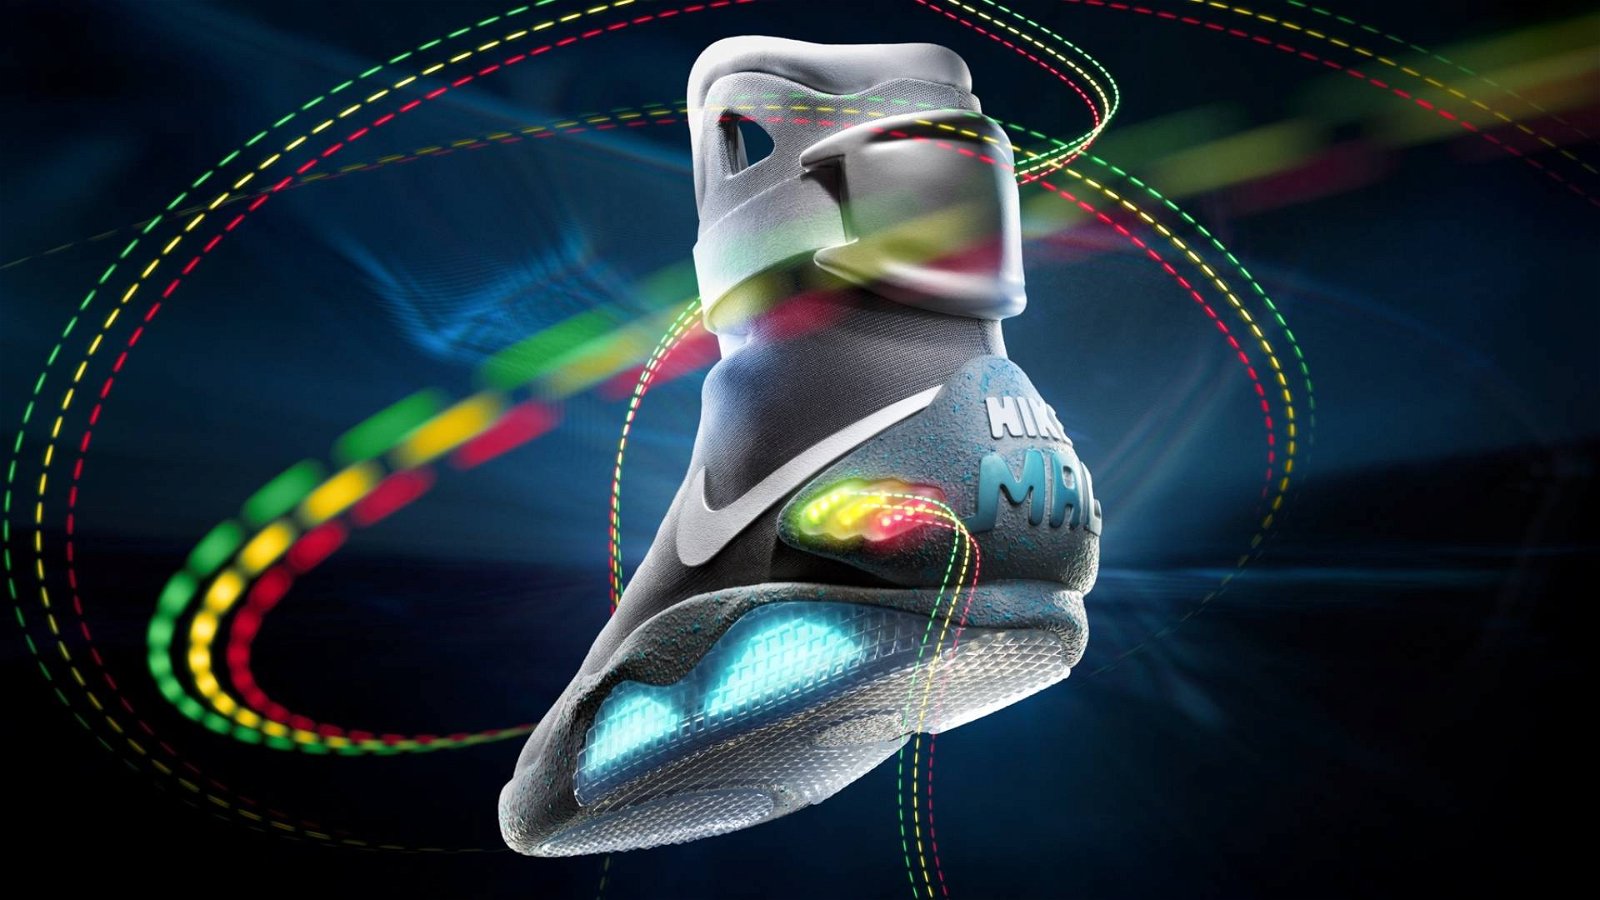 Immagine di Nike auto-allaccianti da basket nel 2019. Marty McFly di "Ritorno al futuro" ne sarebbe felice